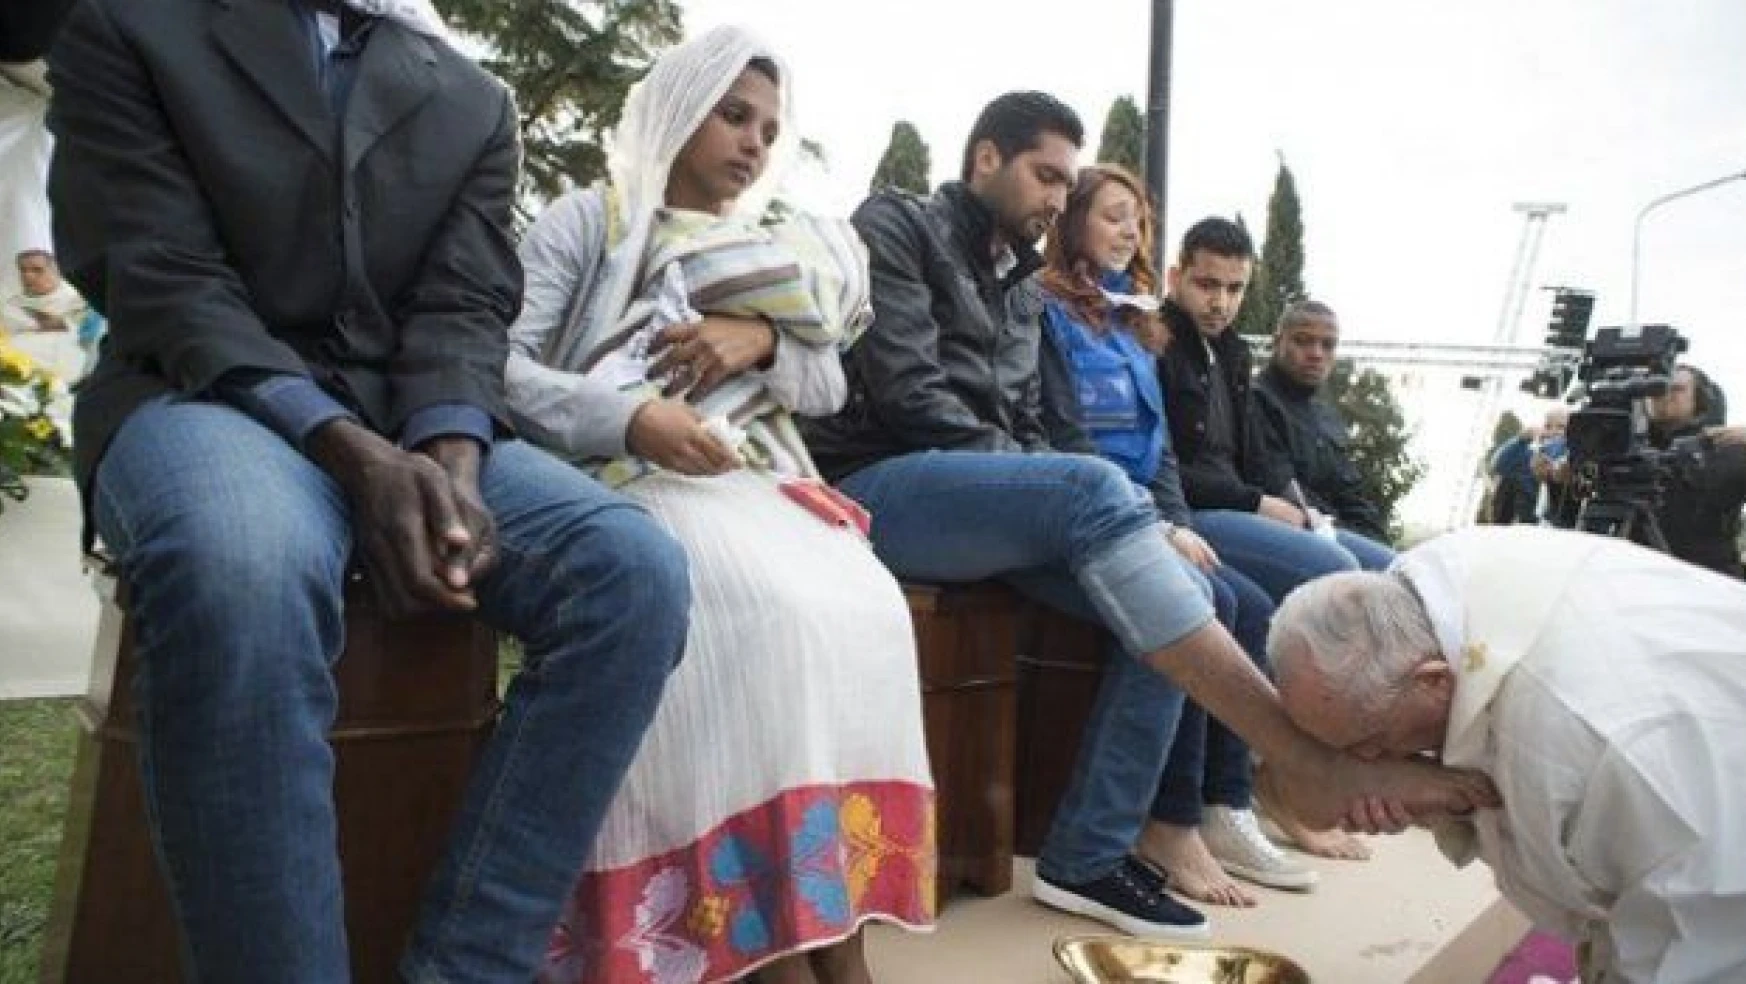 Papa Müslüman göçmenin önce ayaklarını yıkadı sonra öptü